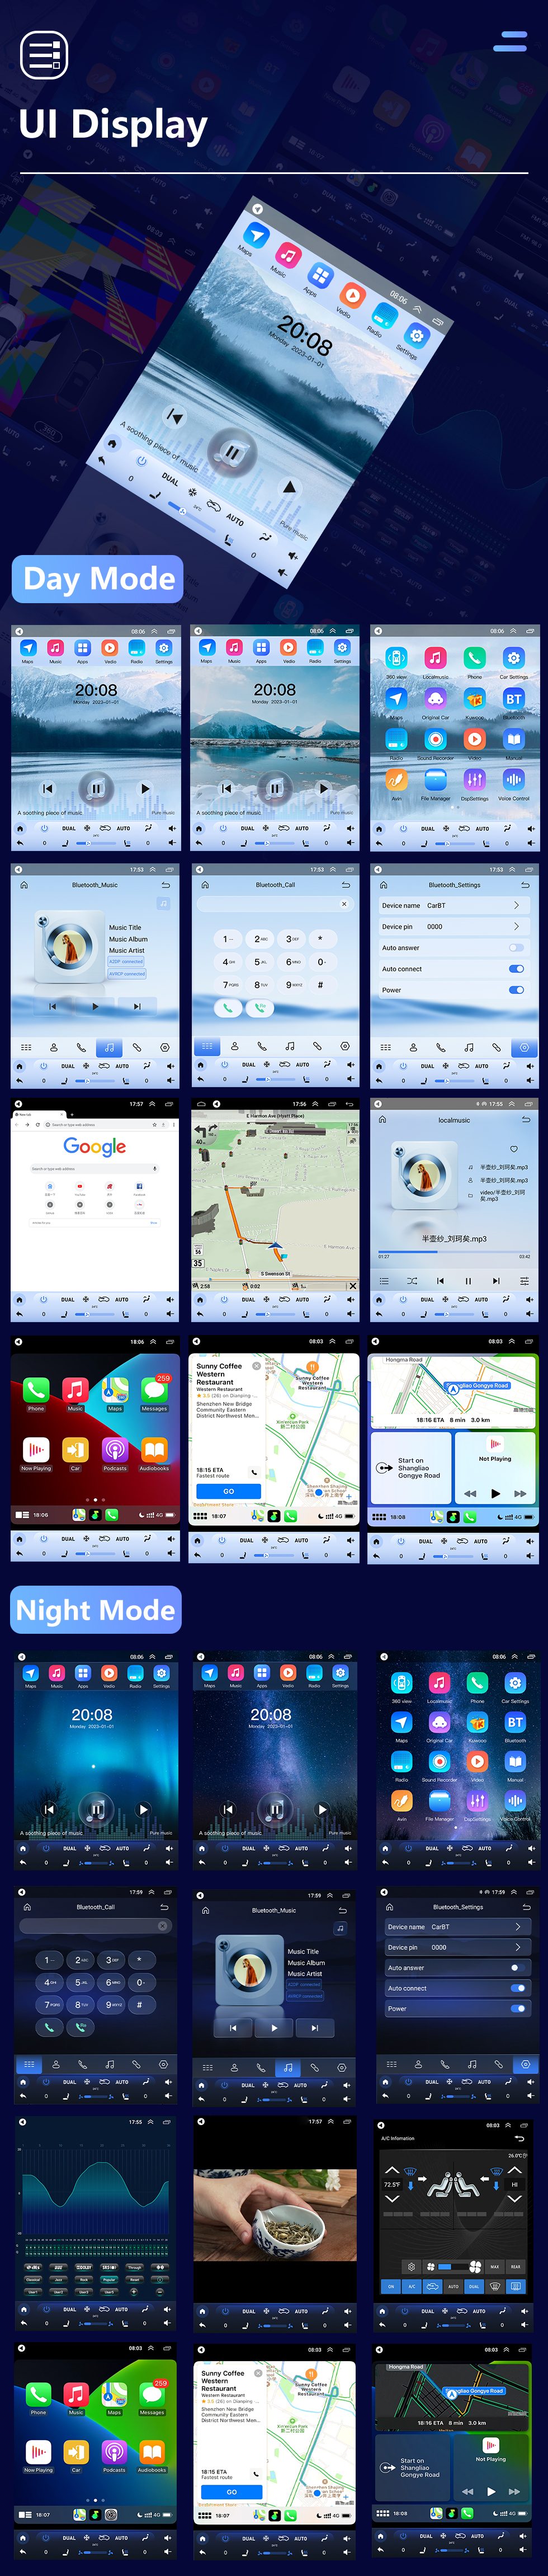 Seicane 2006-2012 Nissan Sylphy 9,7-дюймовый Android 10.0 GPS-навигация Радио с сенсорным экраном Bluetooth USB WIFI поддержка Carplay Задняя камера